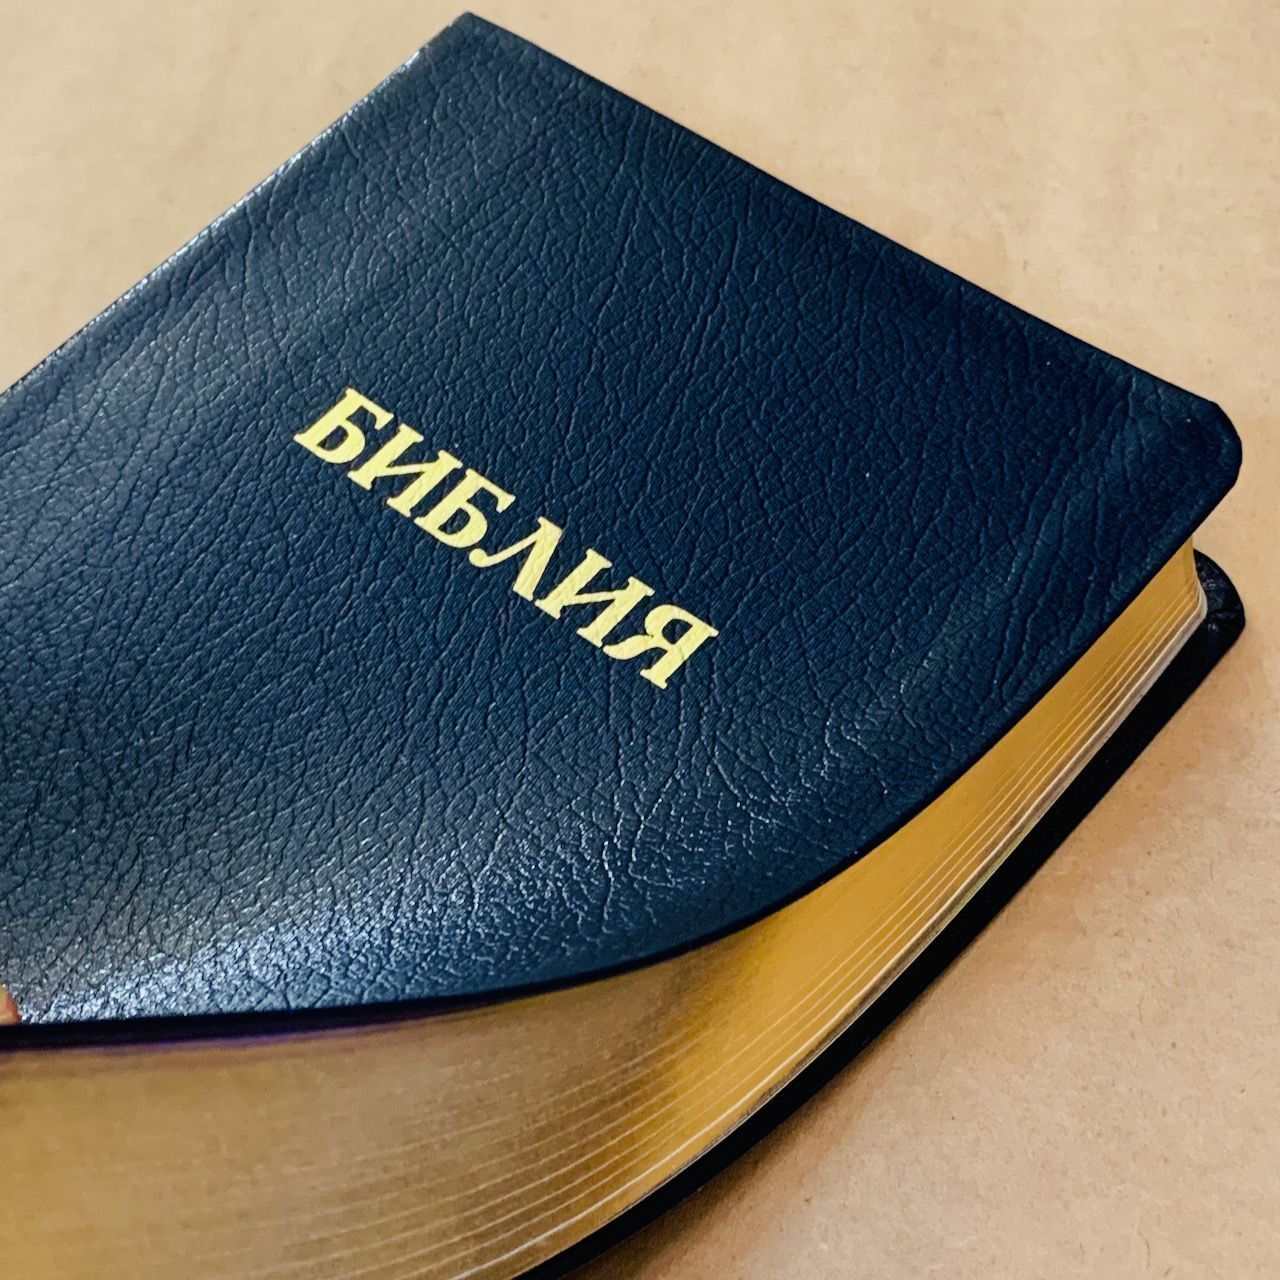 Библия 048 код D2  надпись "библия", кожаный переплет, цвет синий, формат 125*190 мм, золотой обрез, синодальный перевод, паралельные места по центру страницы, 2 закладки, шрифт 10-11 кегель, цветные карты